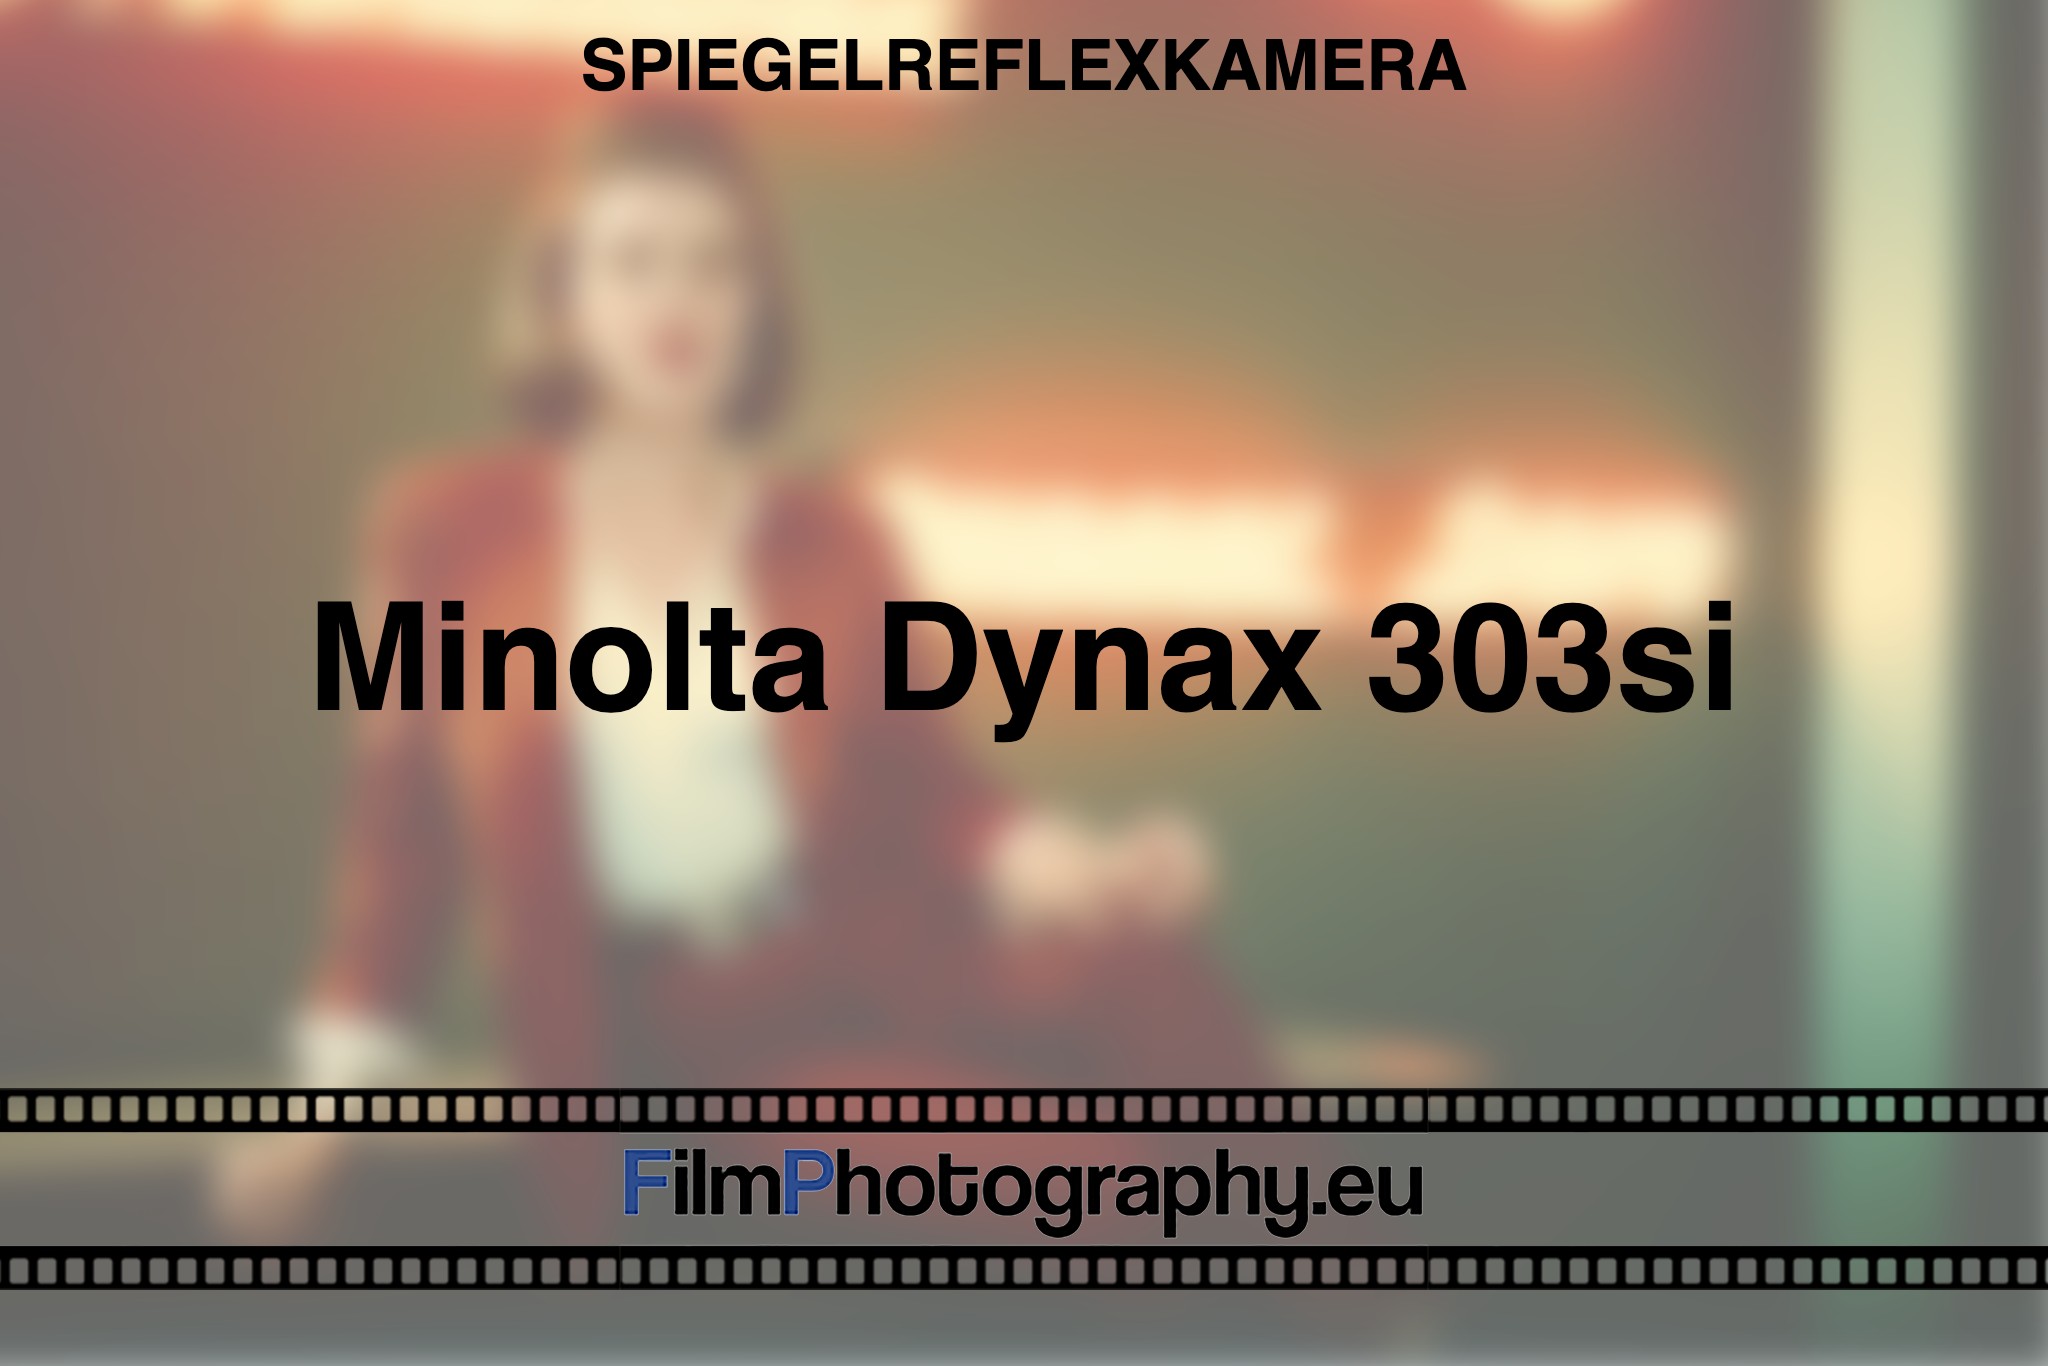 minolta-dynax-303si-spiegelreflexkamera-bnv